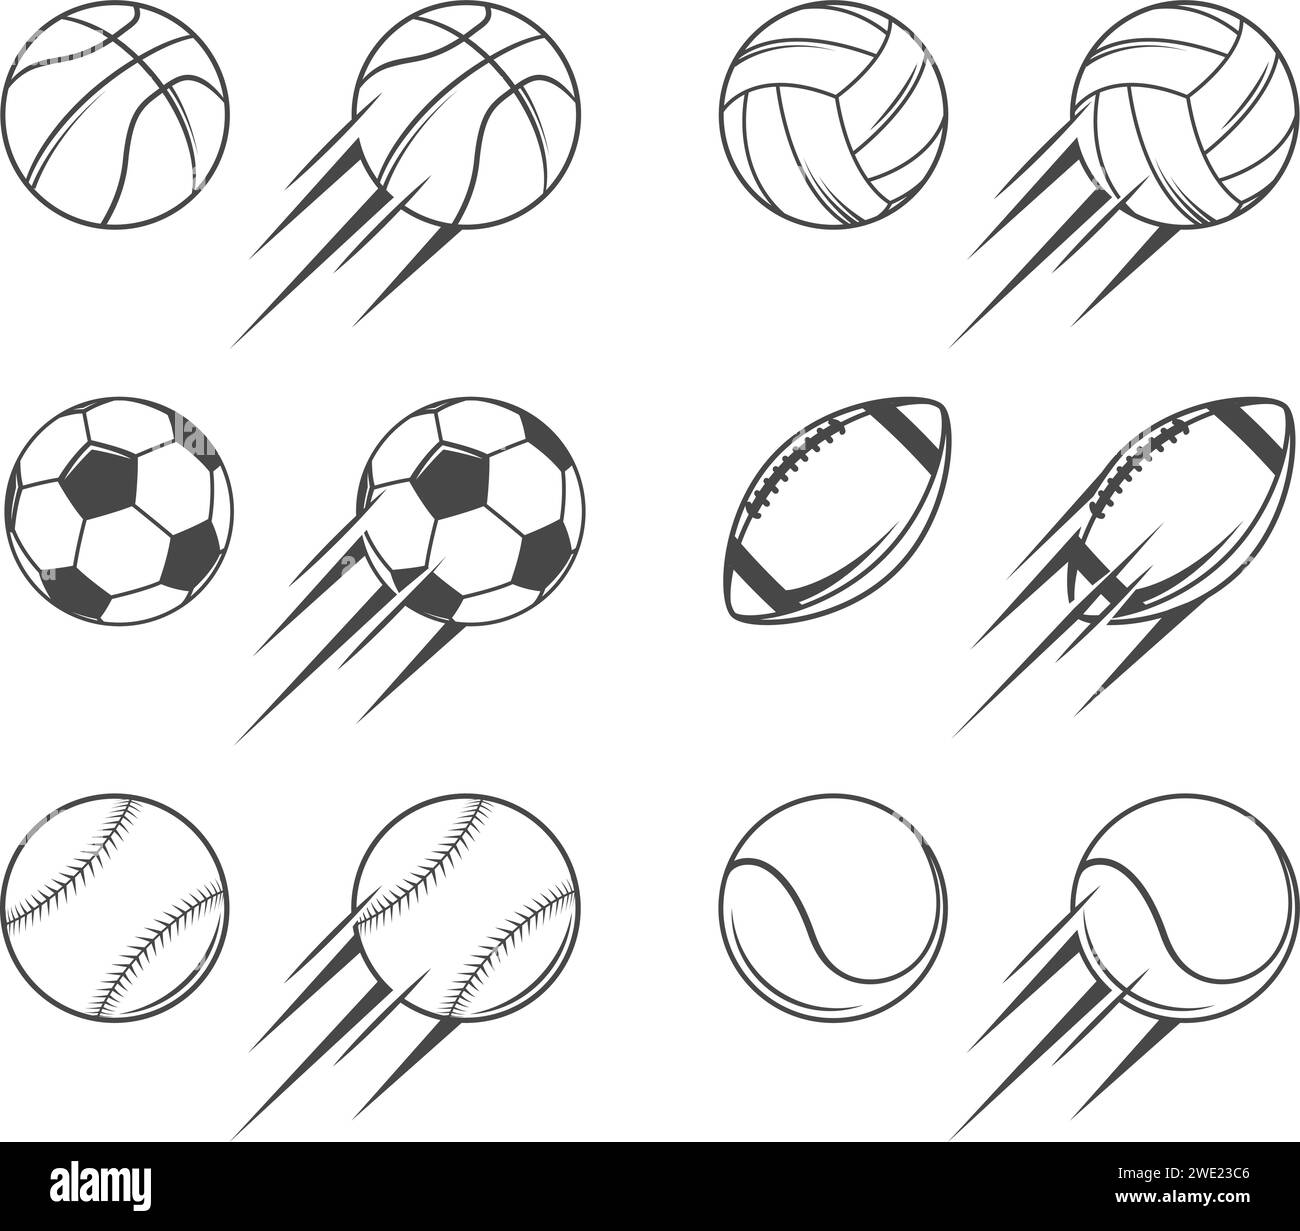 Sport balls illustrations Stock Vector